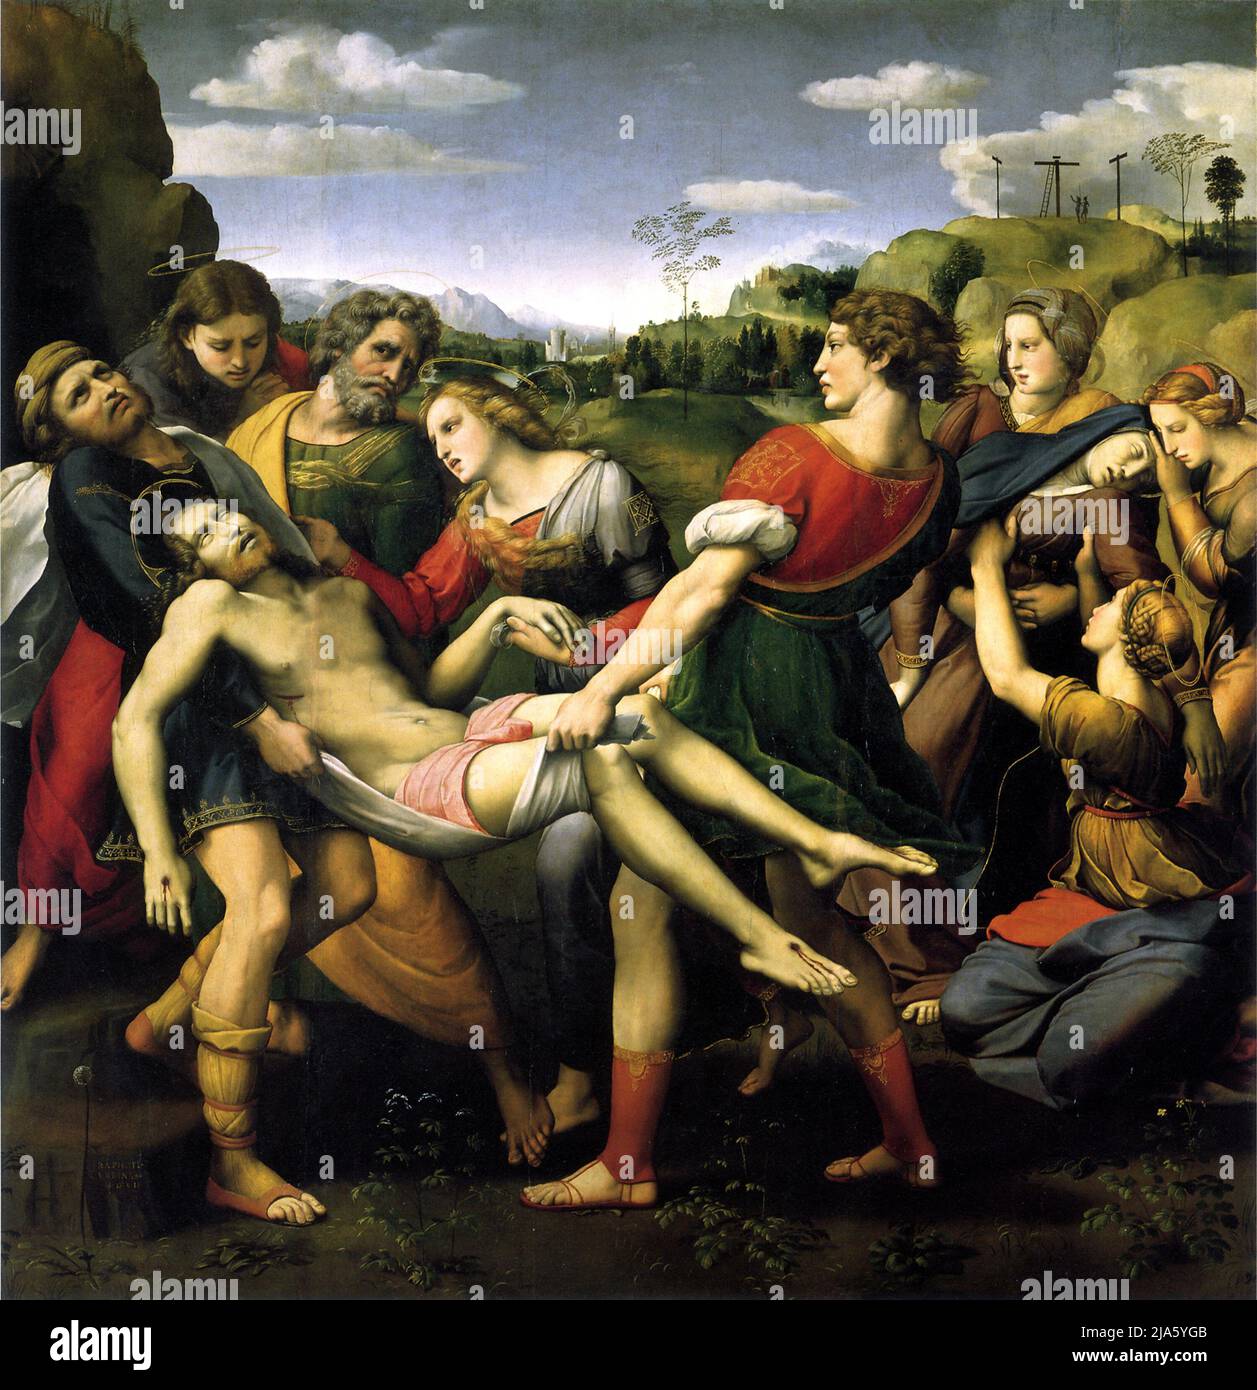 Die Deposition von Raphael, die eine verzweifelte, rötlich-blonde Maria Magdalena zeigt, die in schönen Kleidern gekleidet ist und die Hand des Leibes Jesu hält, während er zum Grab getragen wird. Stockfoto